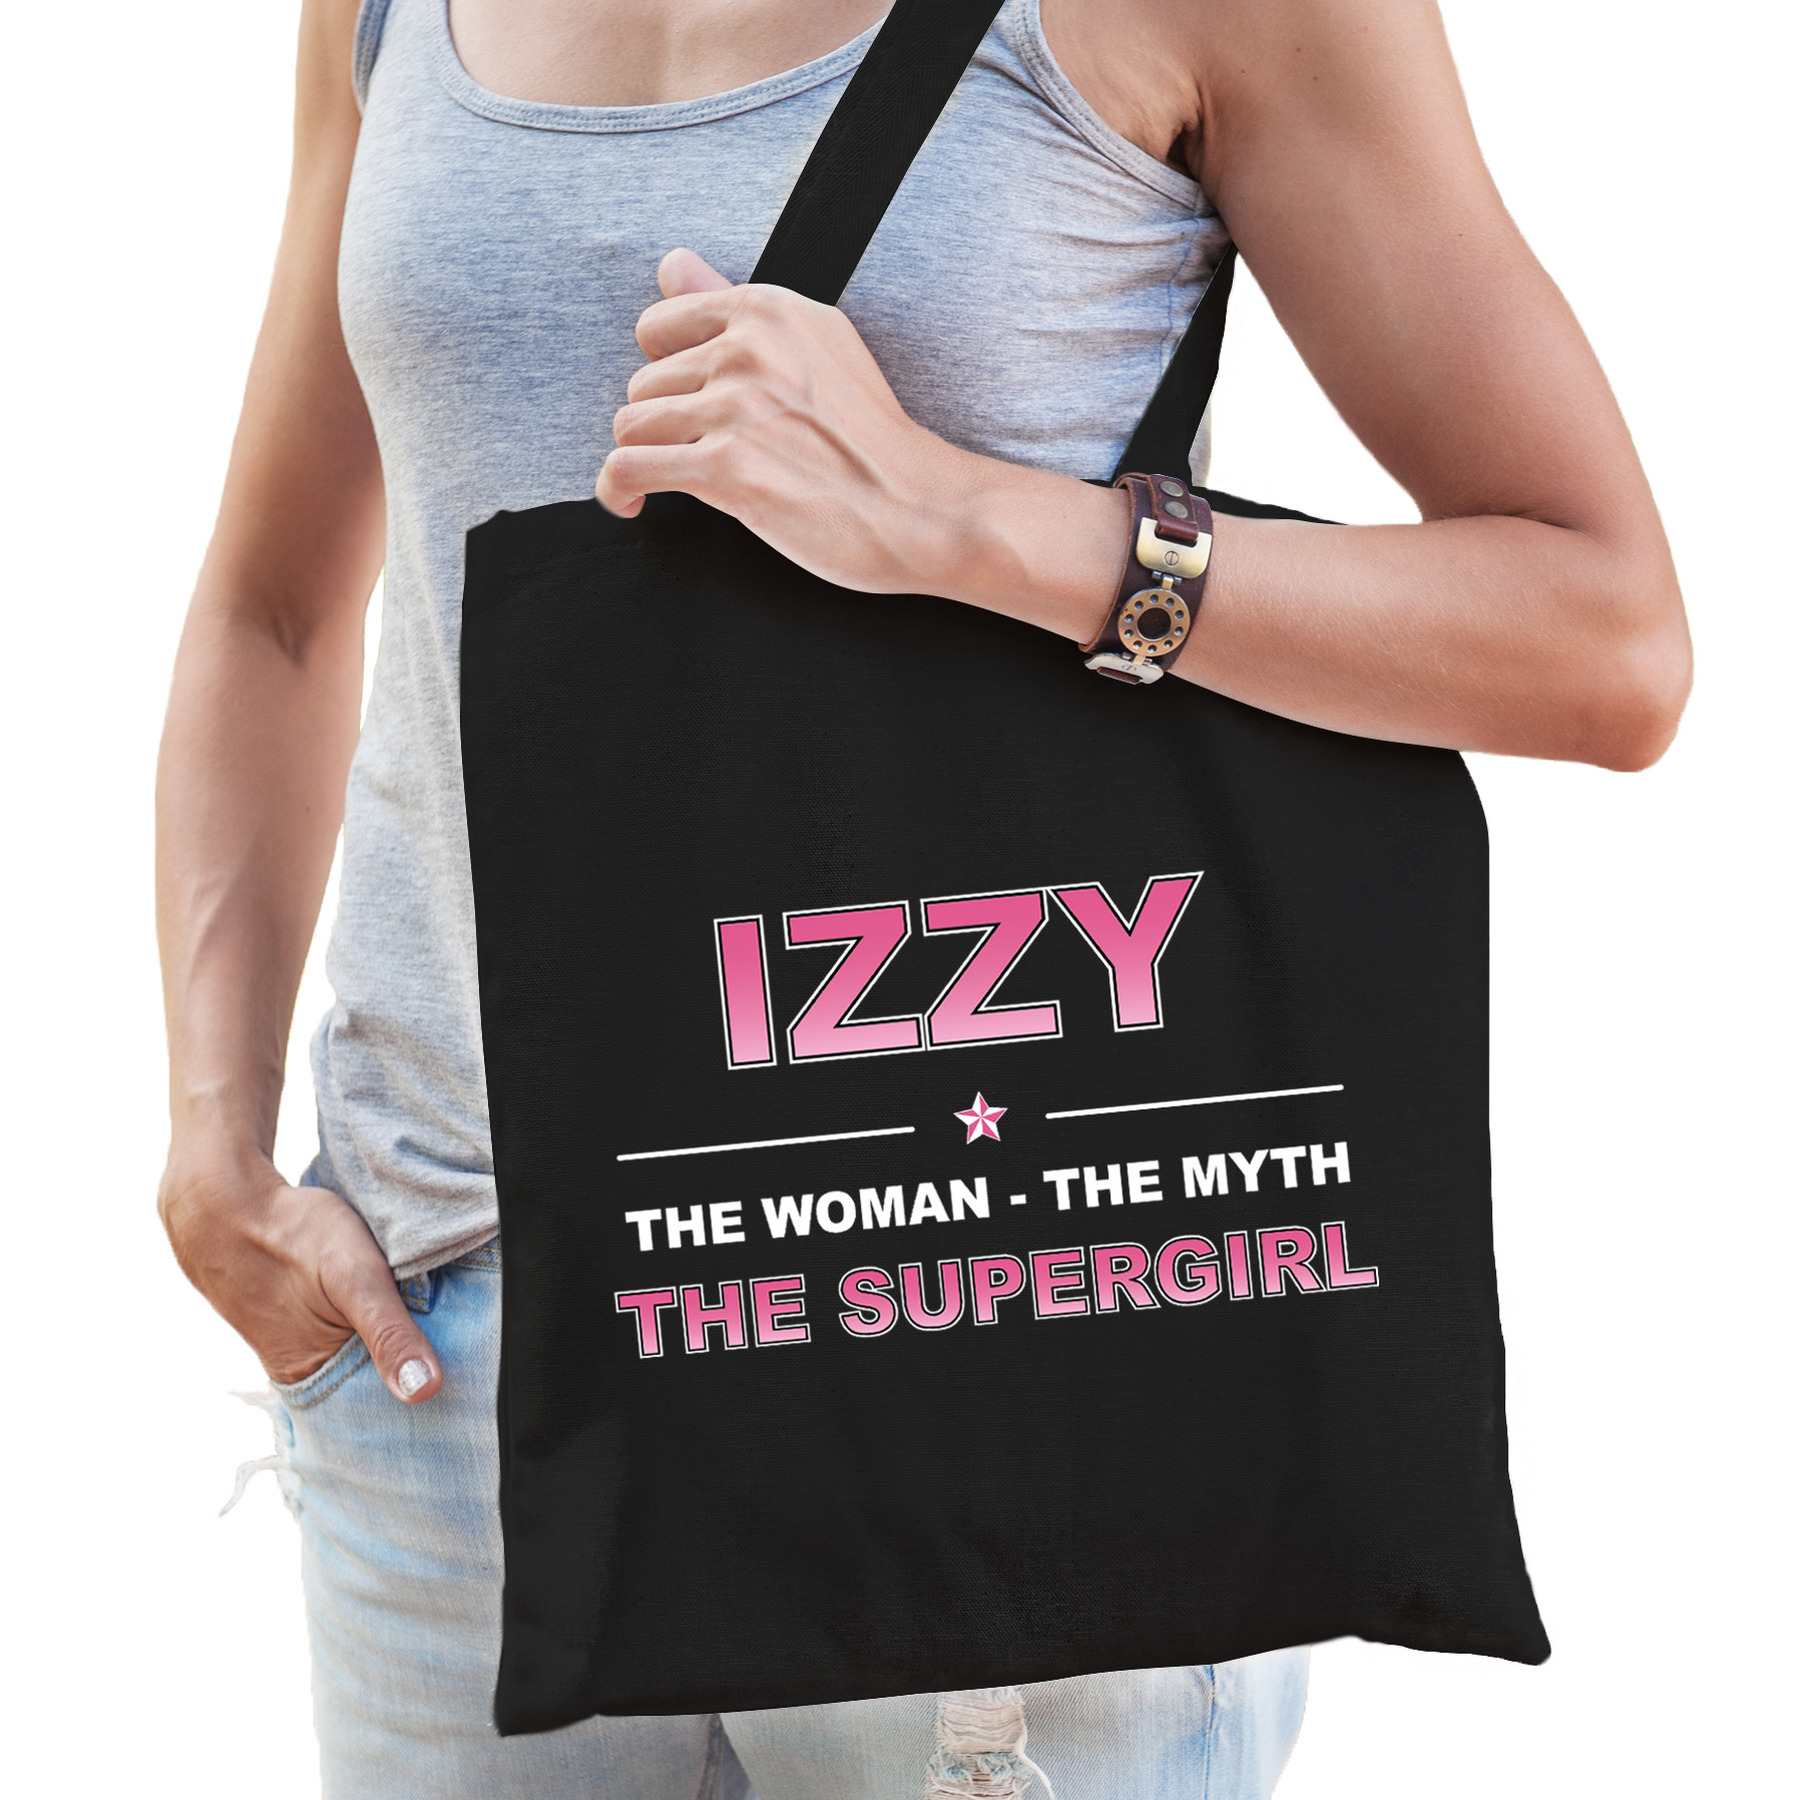 Naam Izzy The women, The myth the supergirl tasje zwart Cadeau boodschappentasje